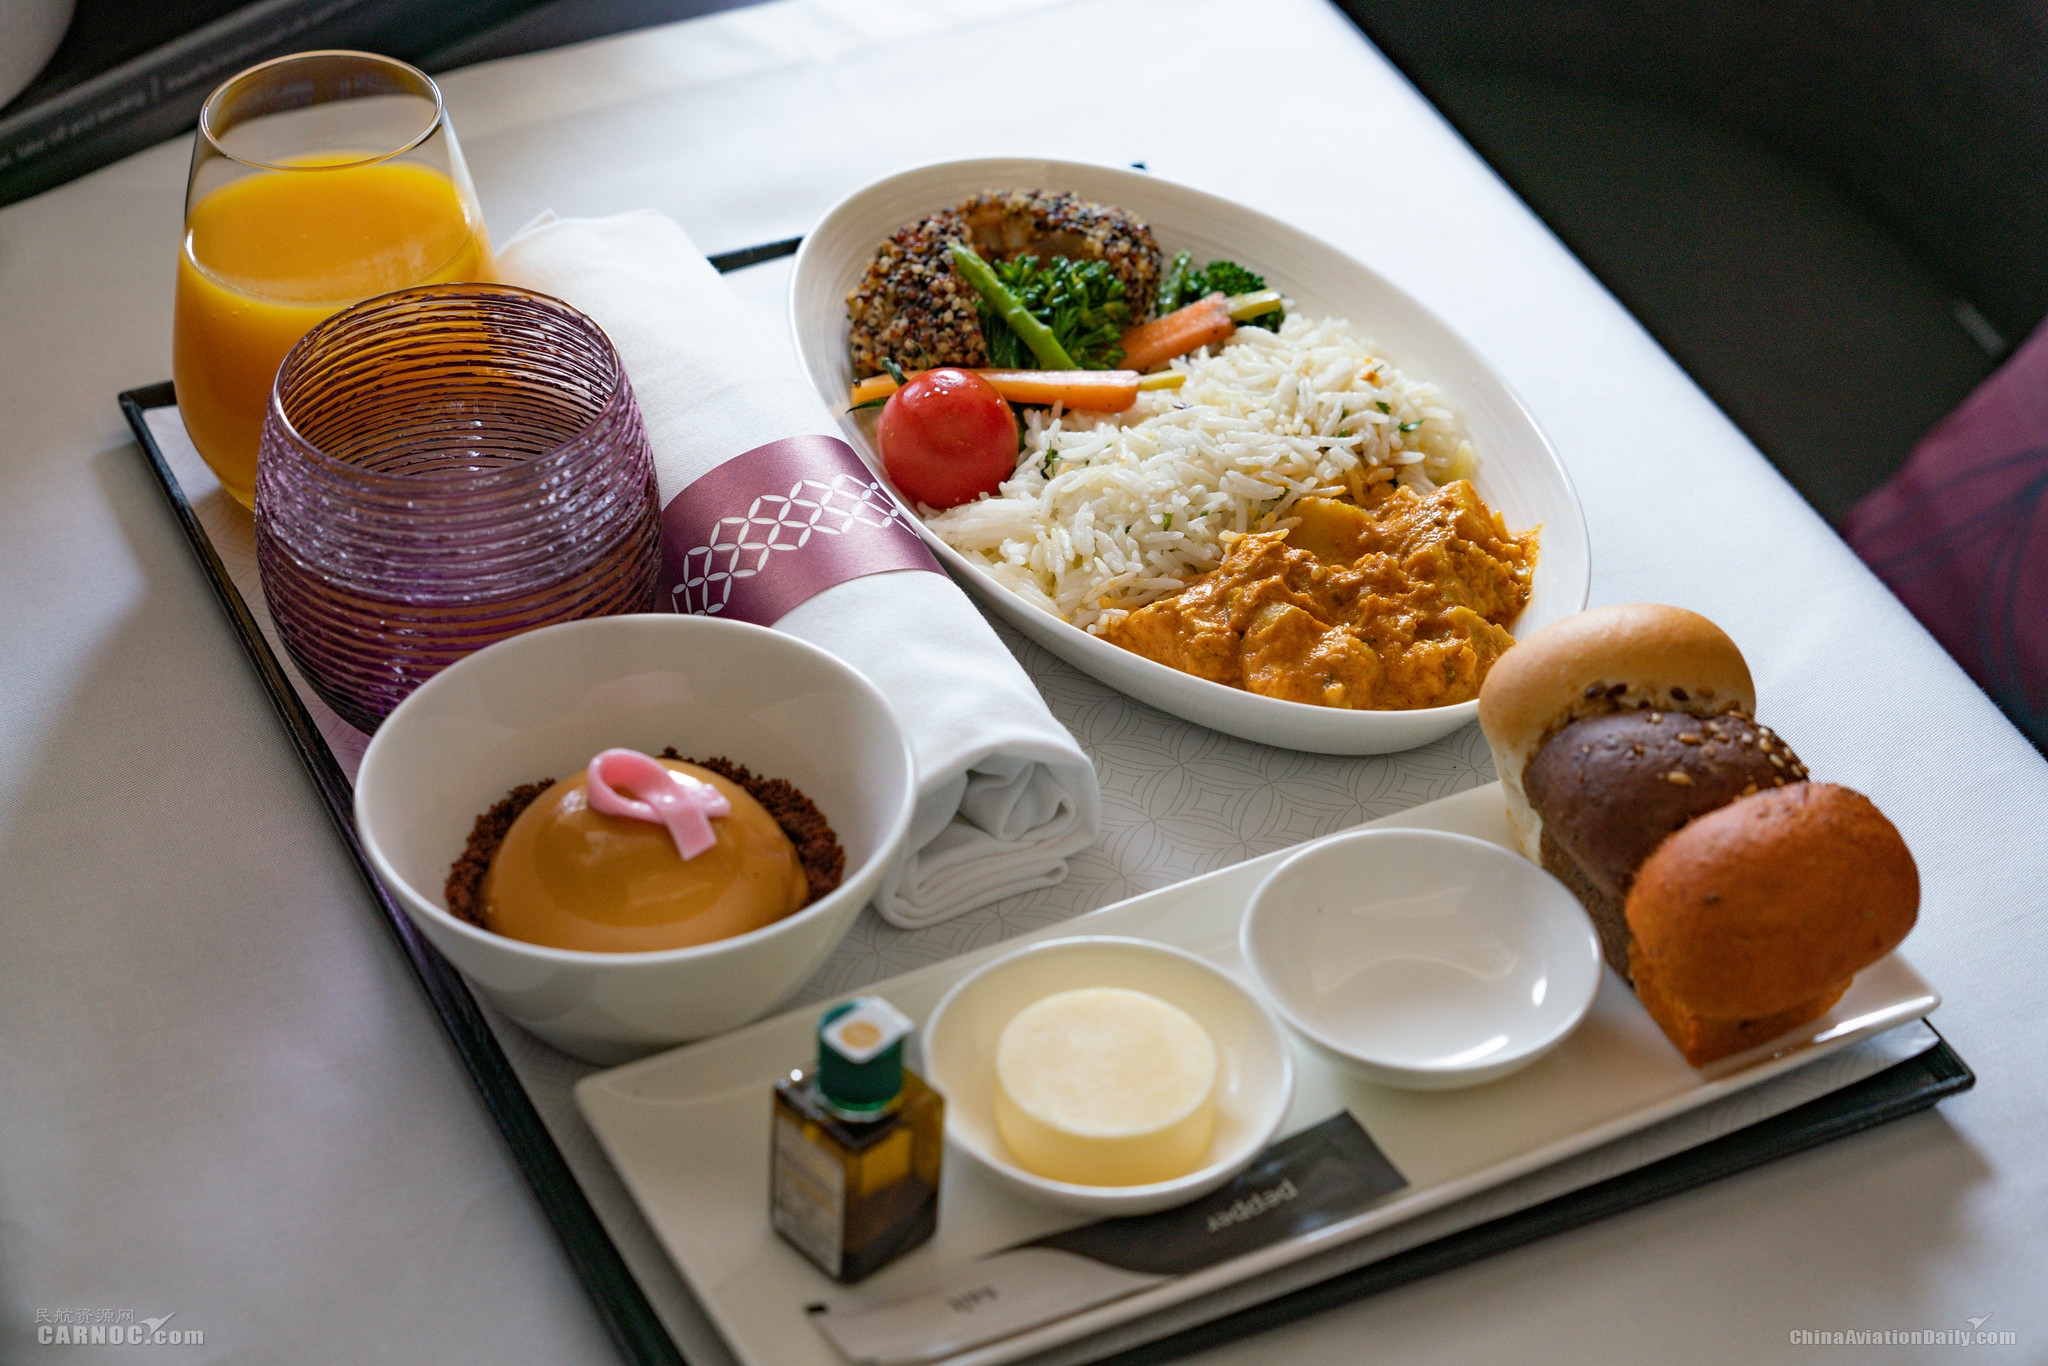 卡塔尔航空公司为高端客户推出了首个全素食系列美食